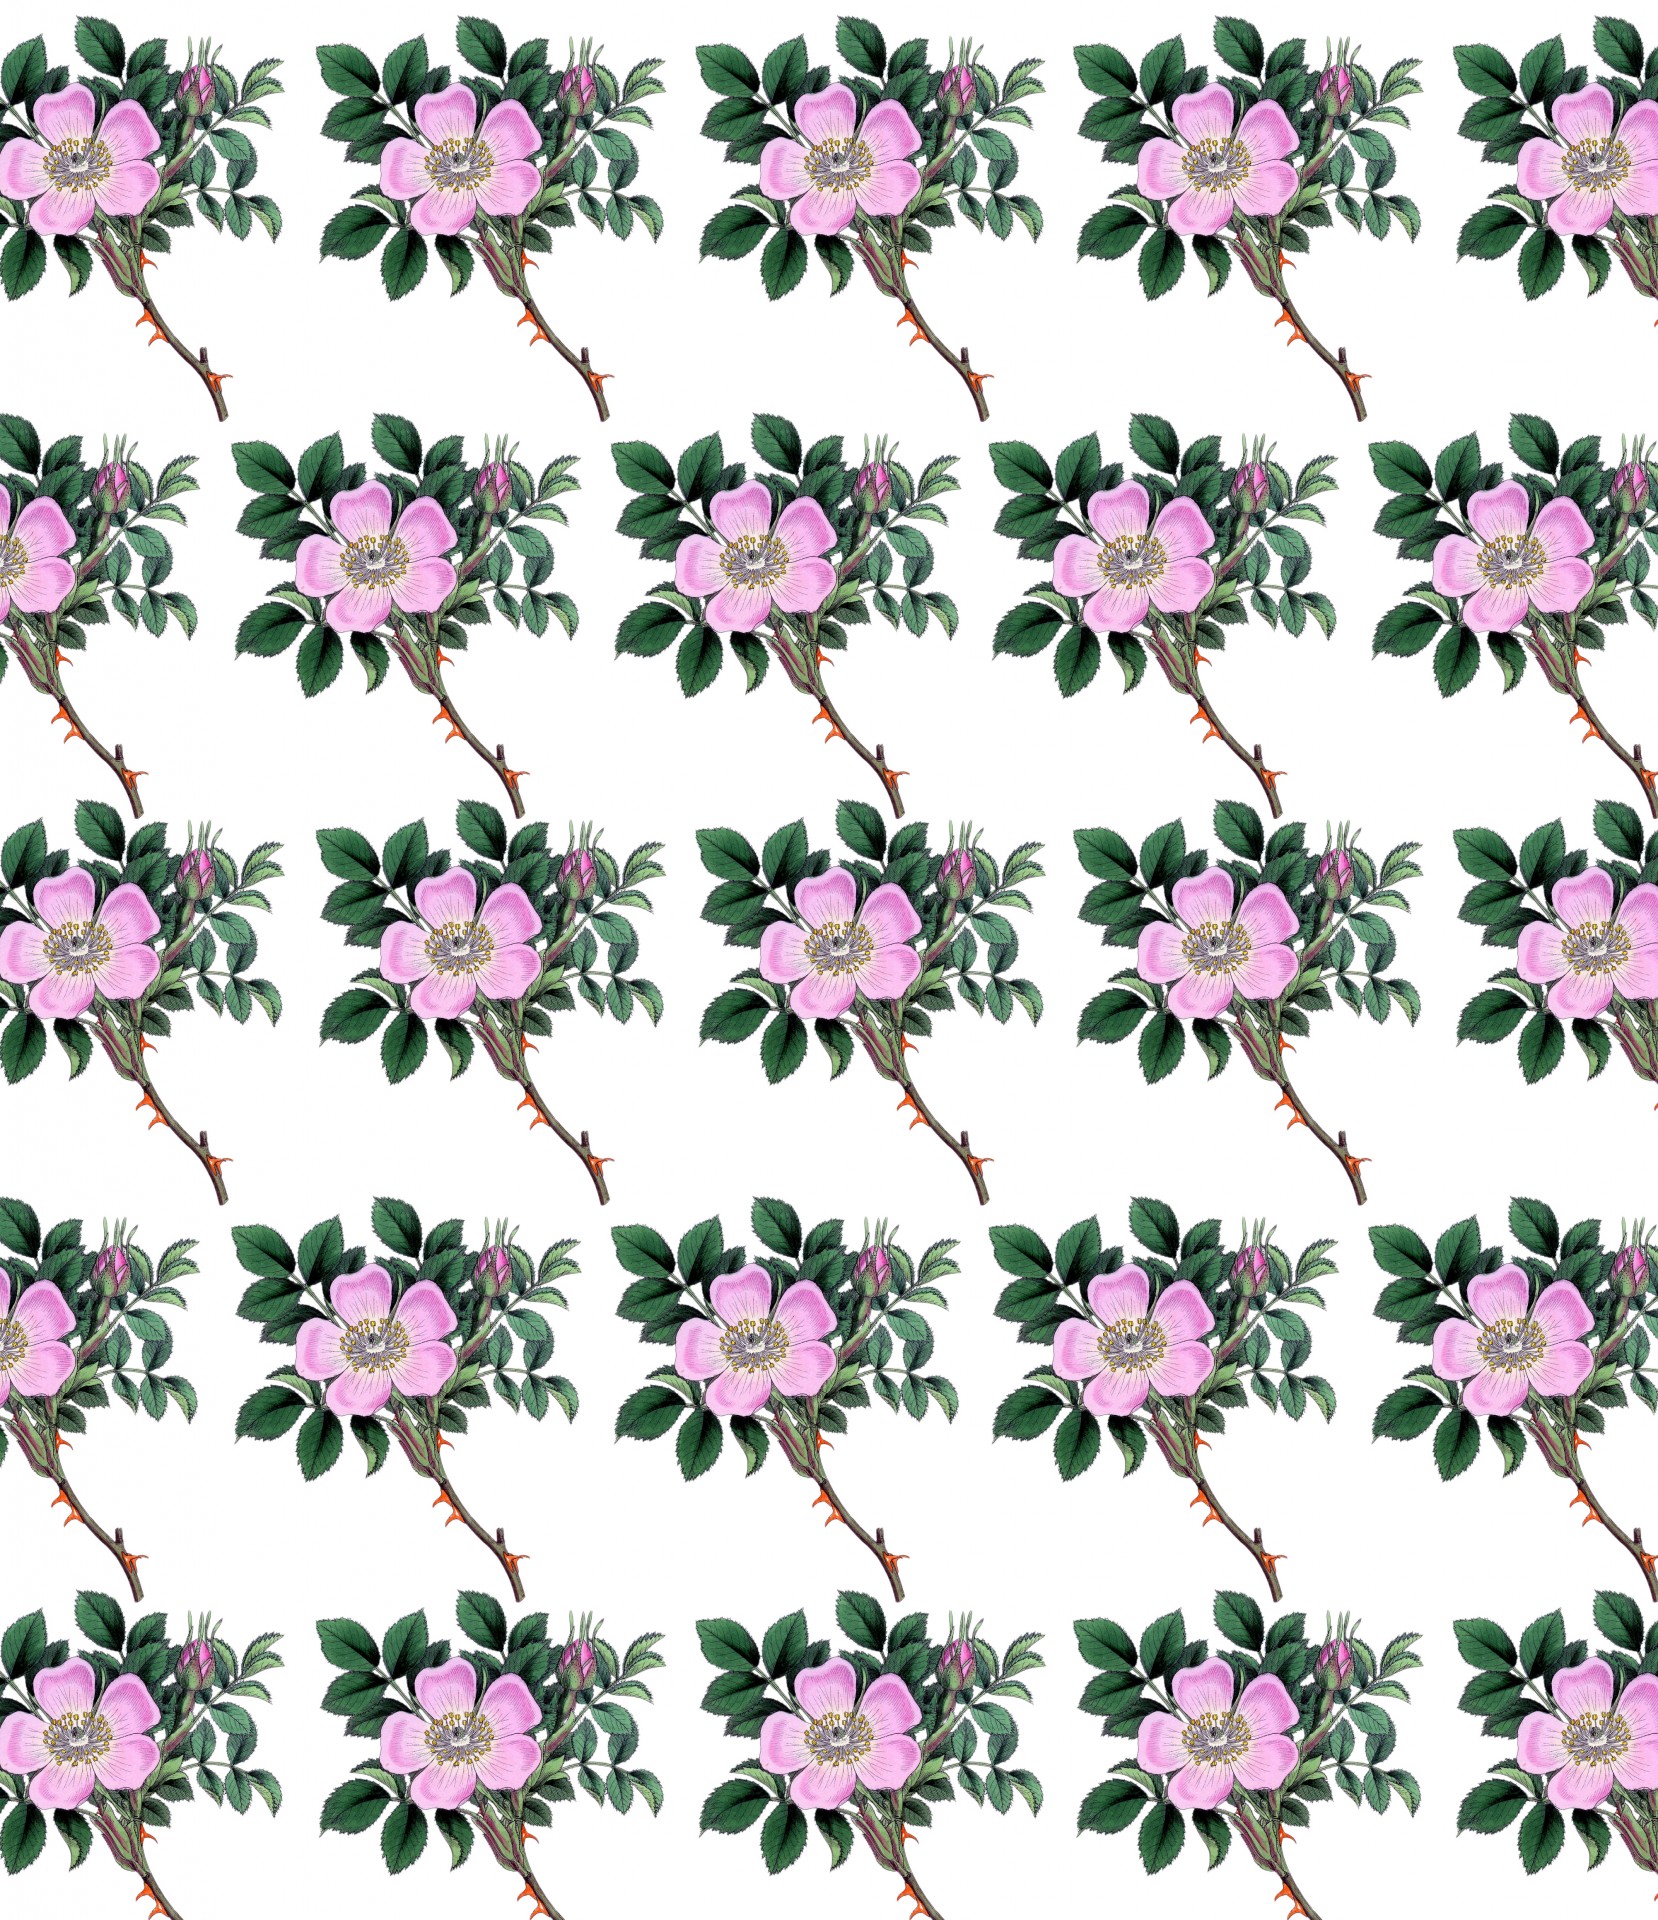 Vintage pink floral dog rose flowers pattern background wallpaper for scrapbooking